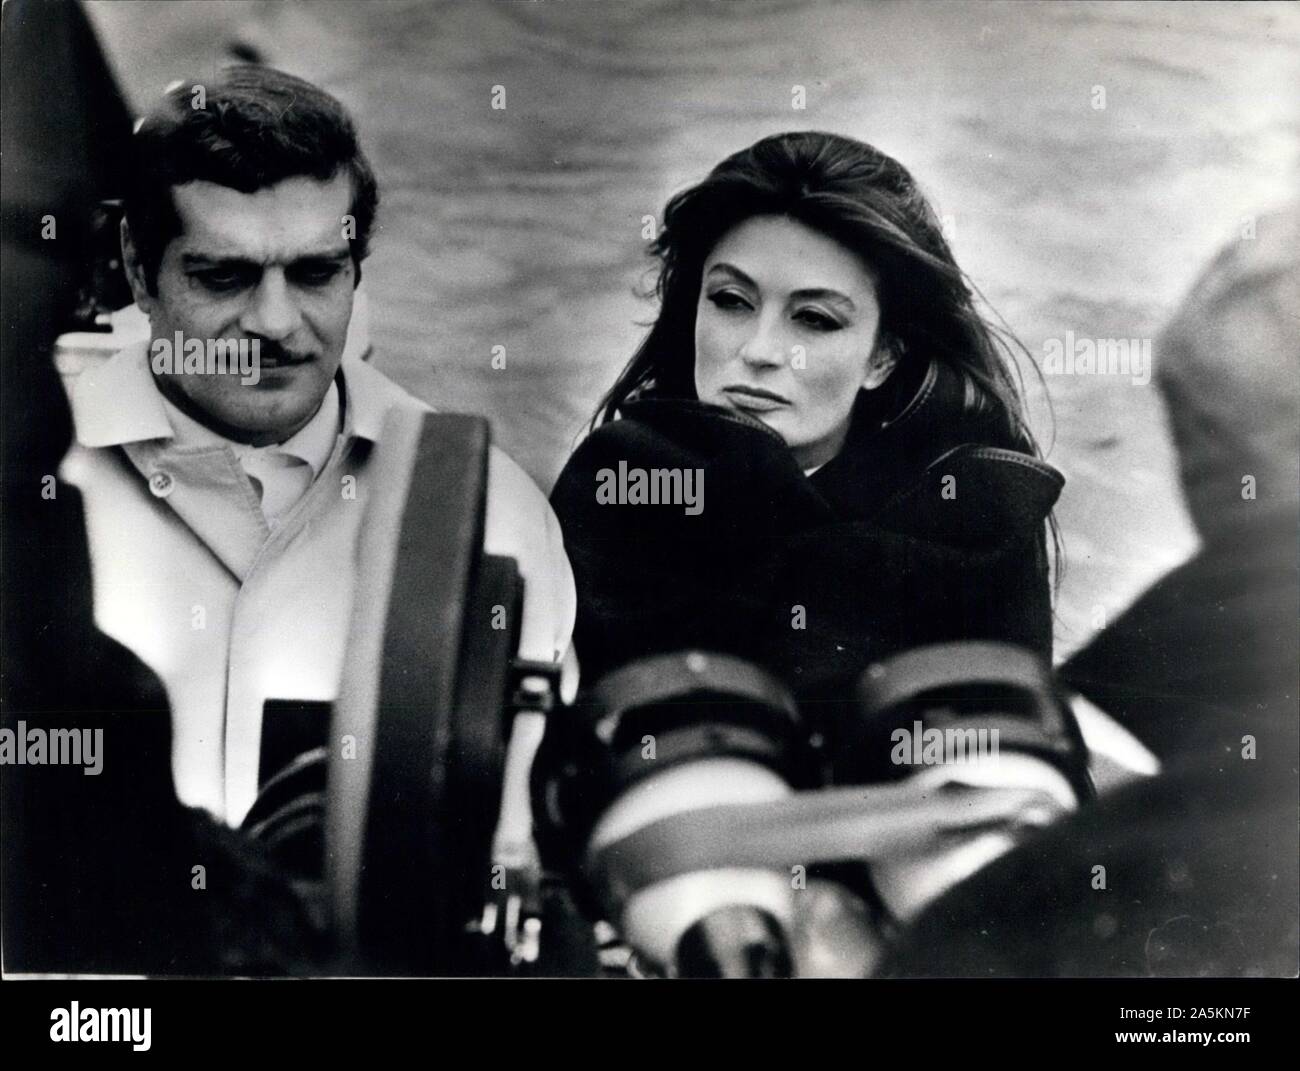 1968 - Italia - Omar Sharif e ANOUK AIMEE sono visto oltre le telecamere sul set del loro nuovo film "L'appuntamento". Credito: Keystone Pictures USA/ZUMAPRESS.com/Alamy Live News Foto Stock